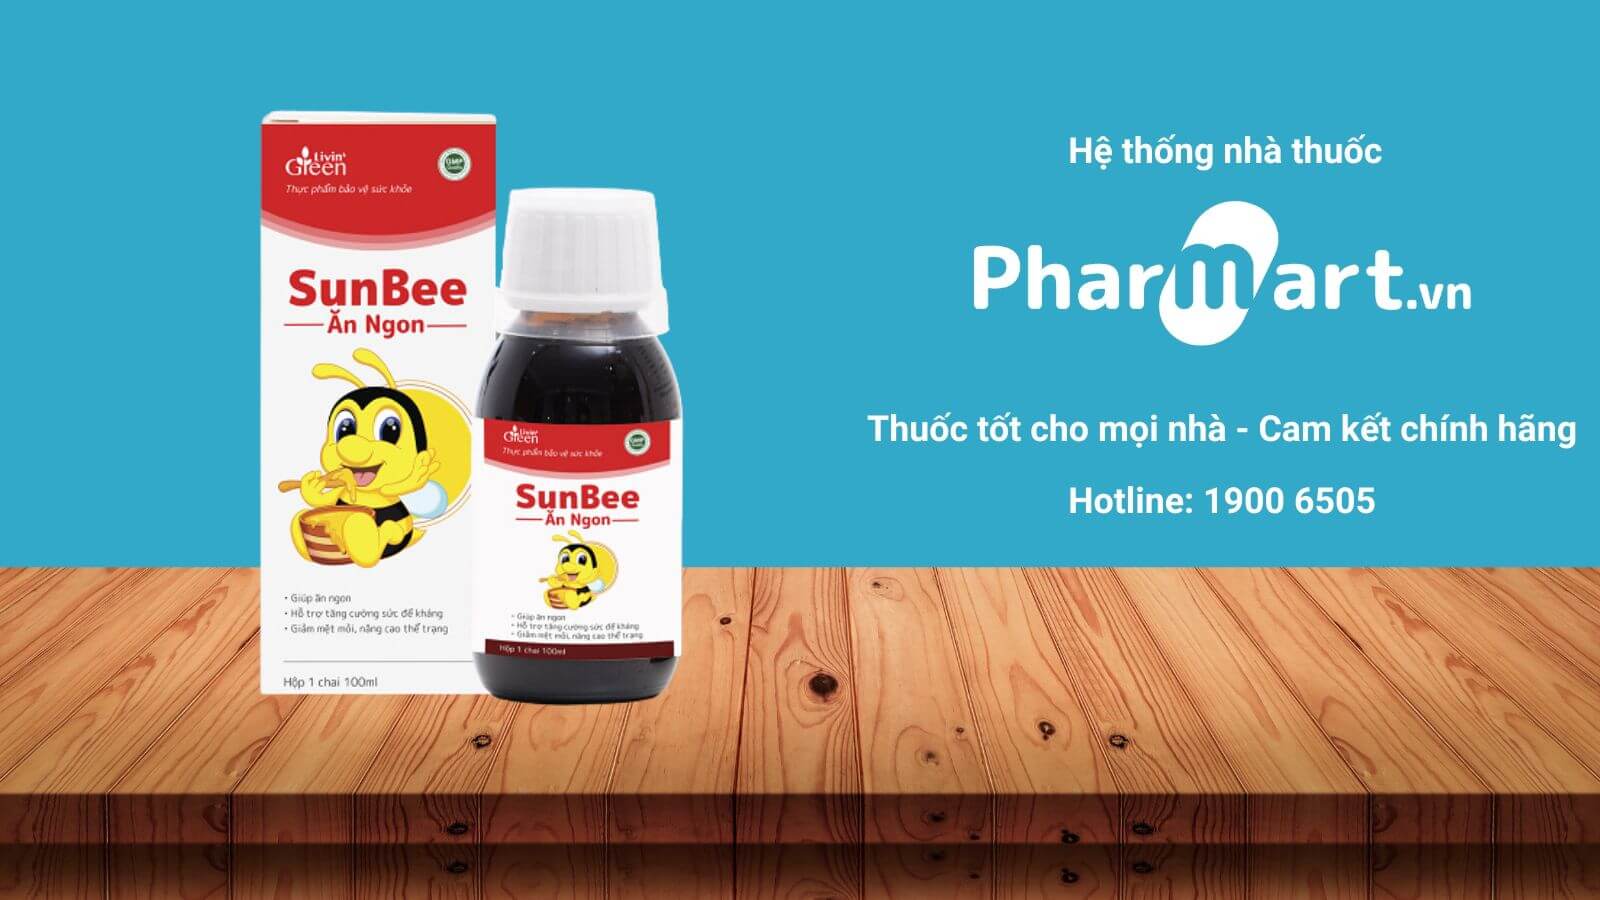 Mua SunBee ăn ngon chính hãng tại Pharmart.vn